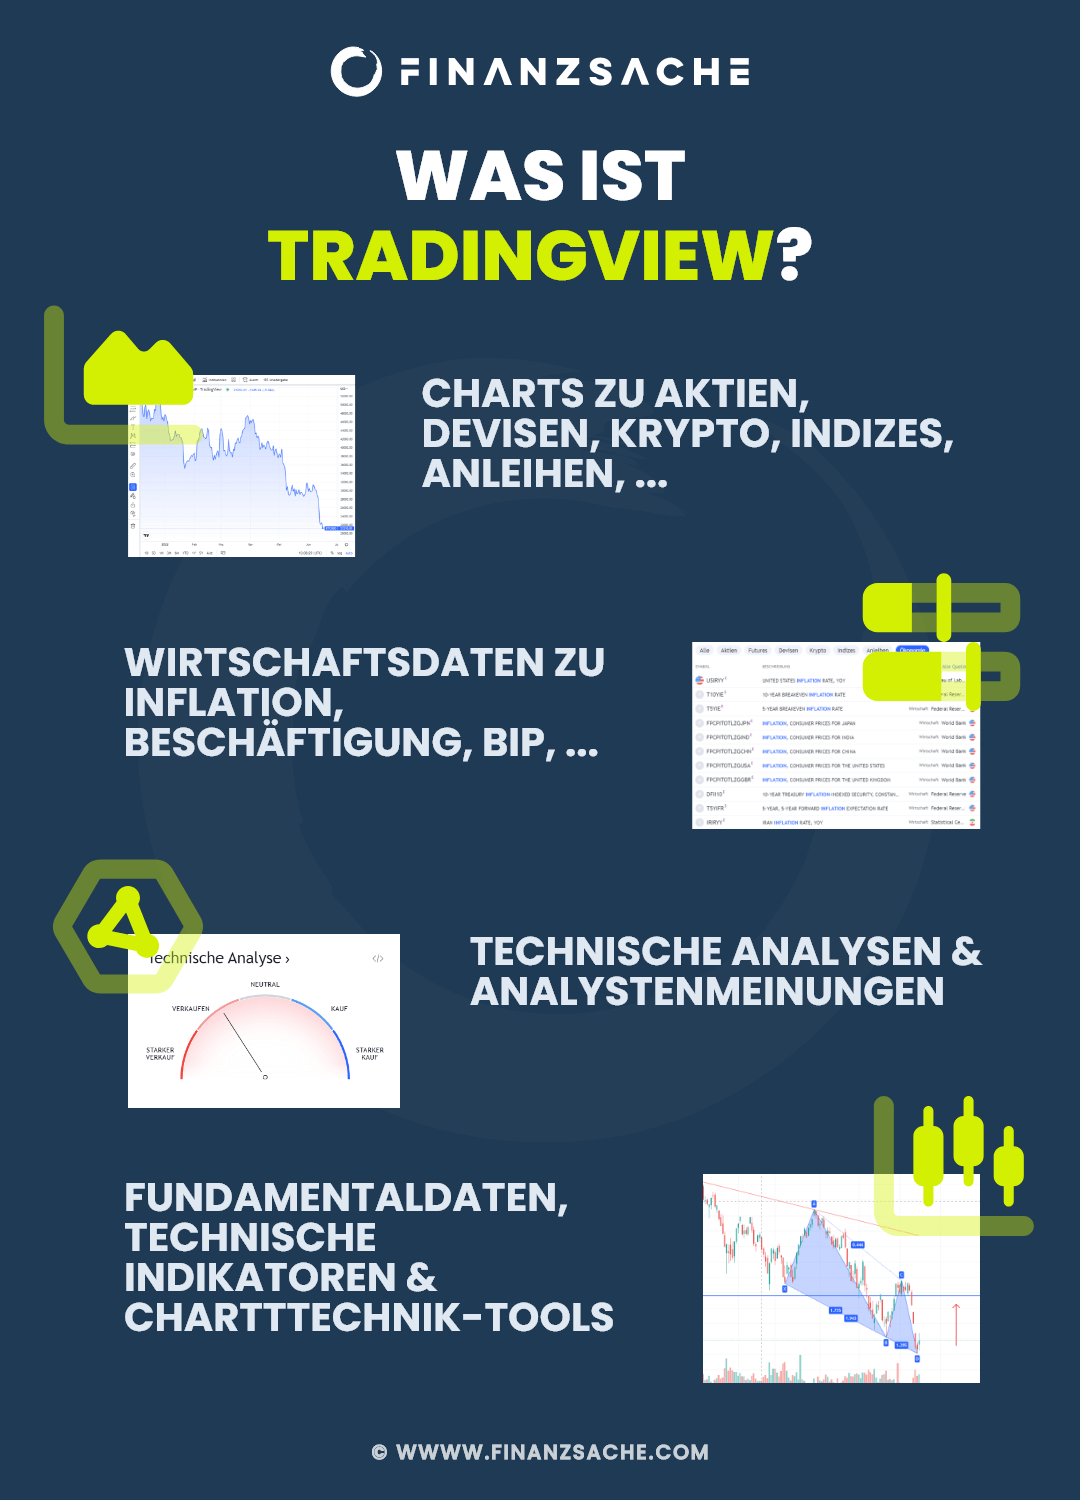 TradingView Analystenmeinungen, technische Analyse, Chartanalyse, Charts, Fundamentaldaten, Indikatoren